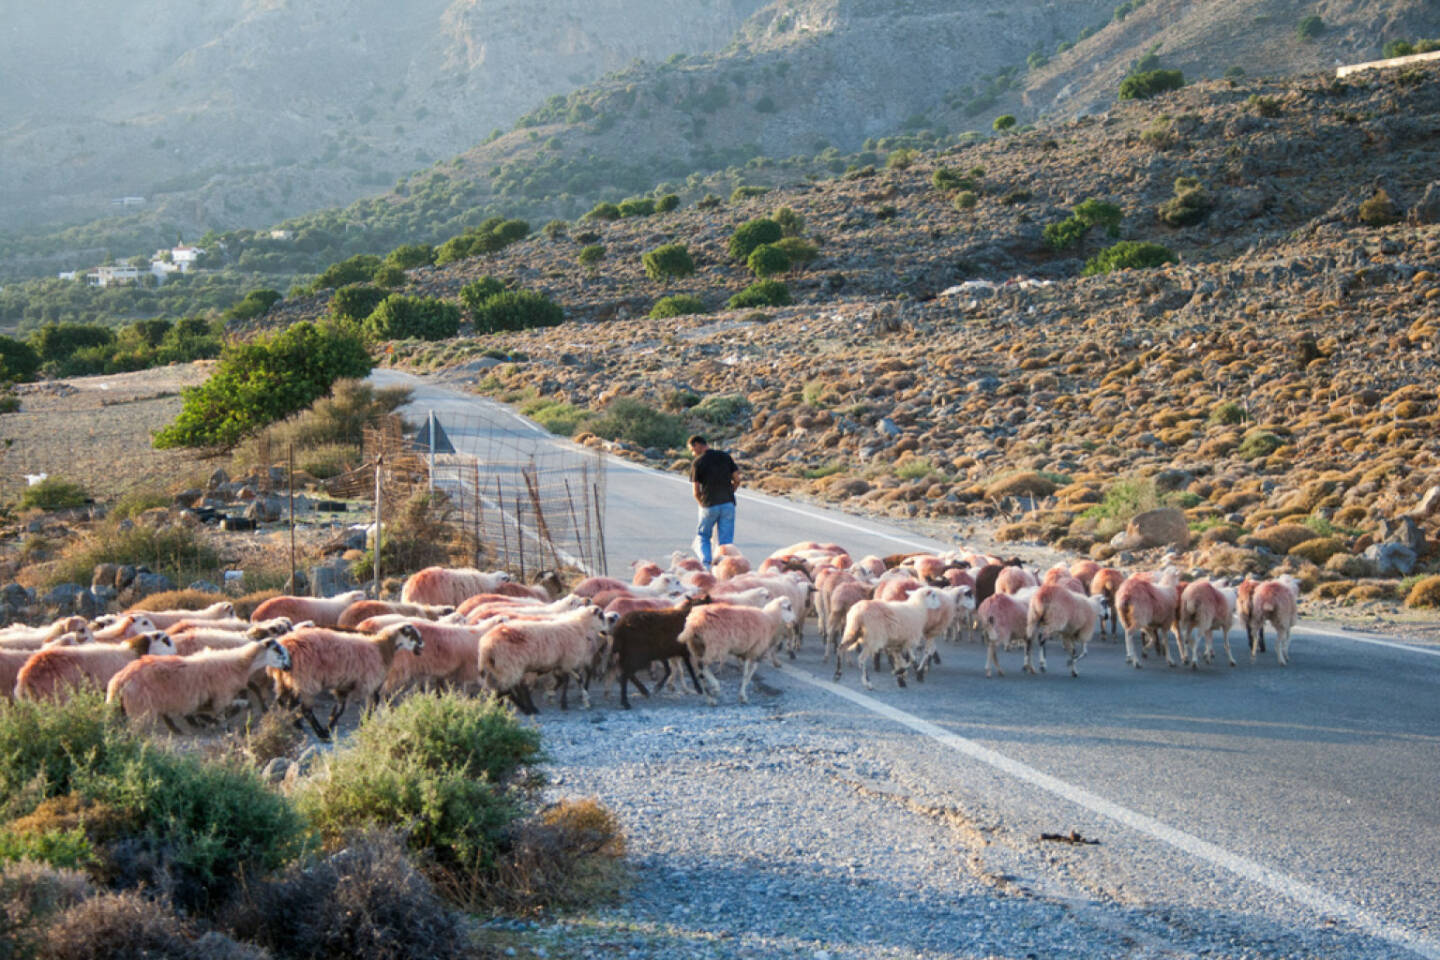 Schaf, Schafe, Herde, folgen, verfolgen, nach, hinten nach